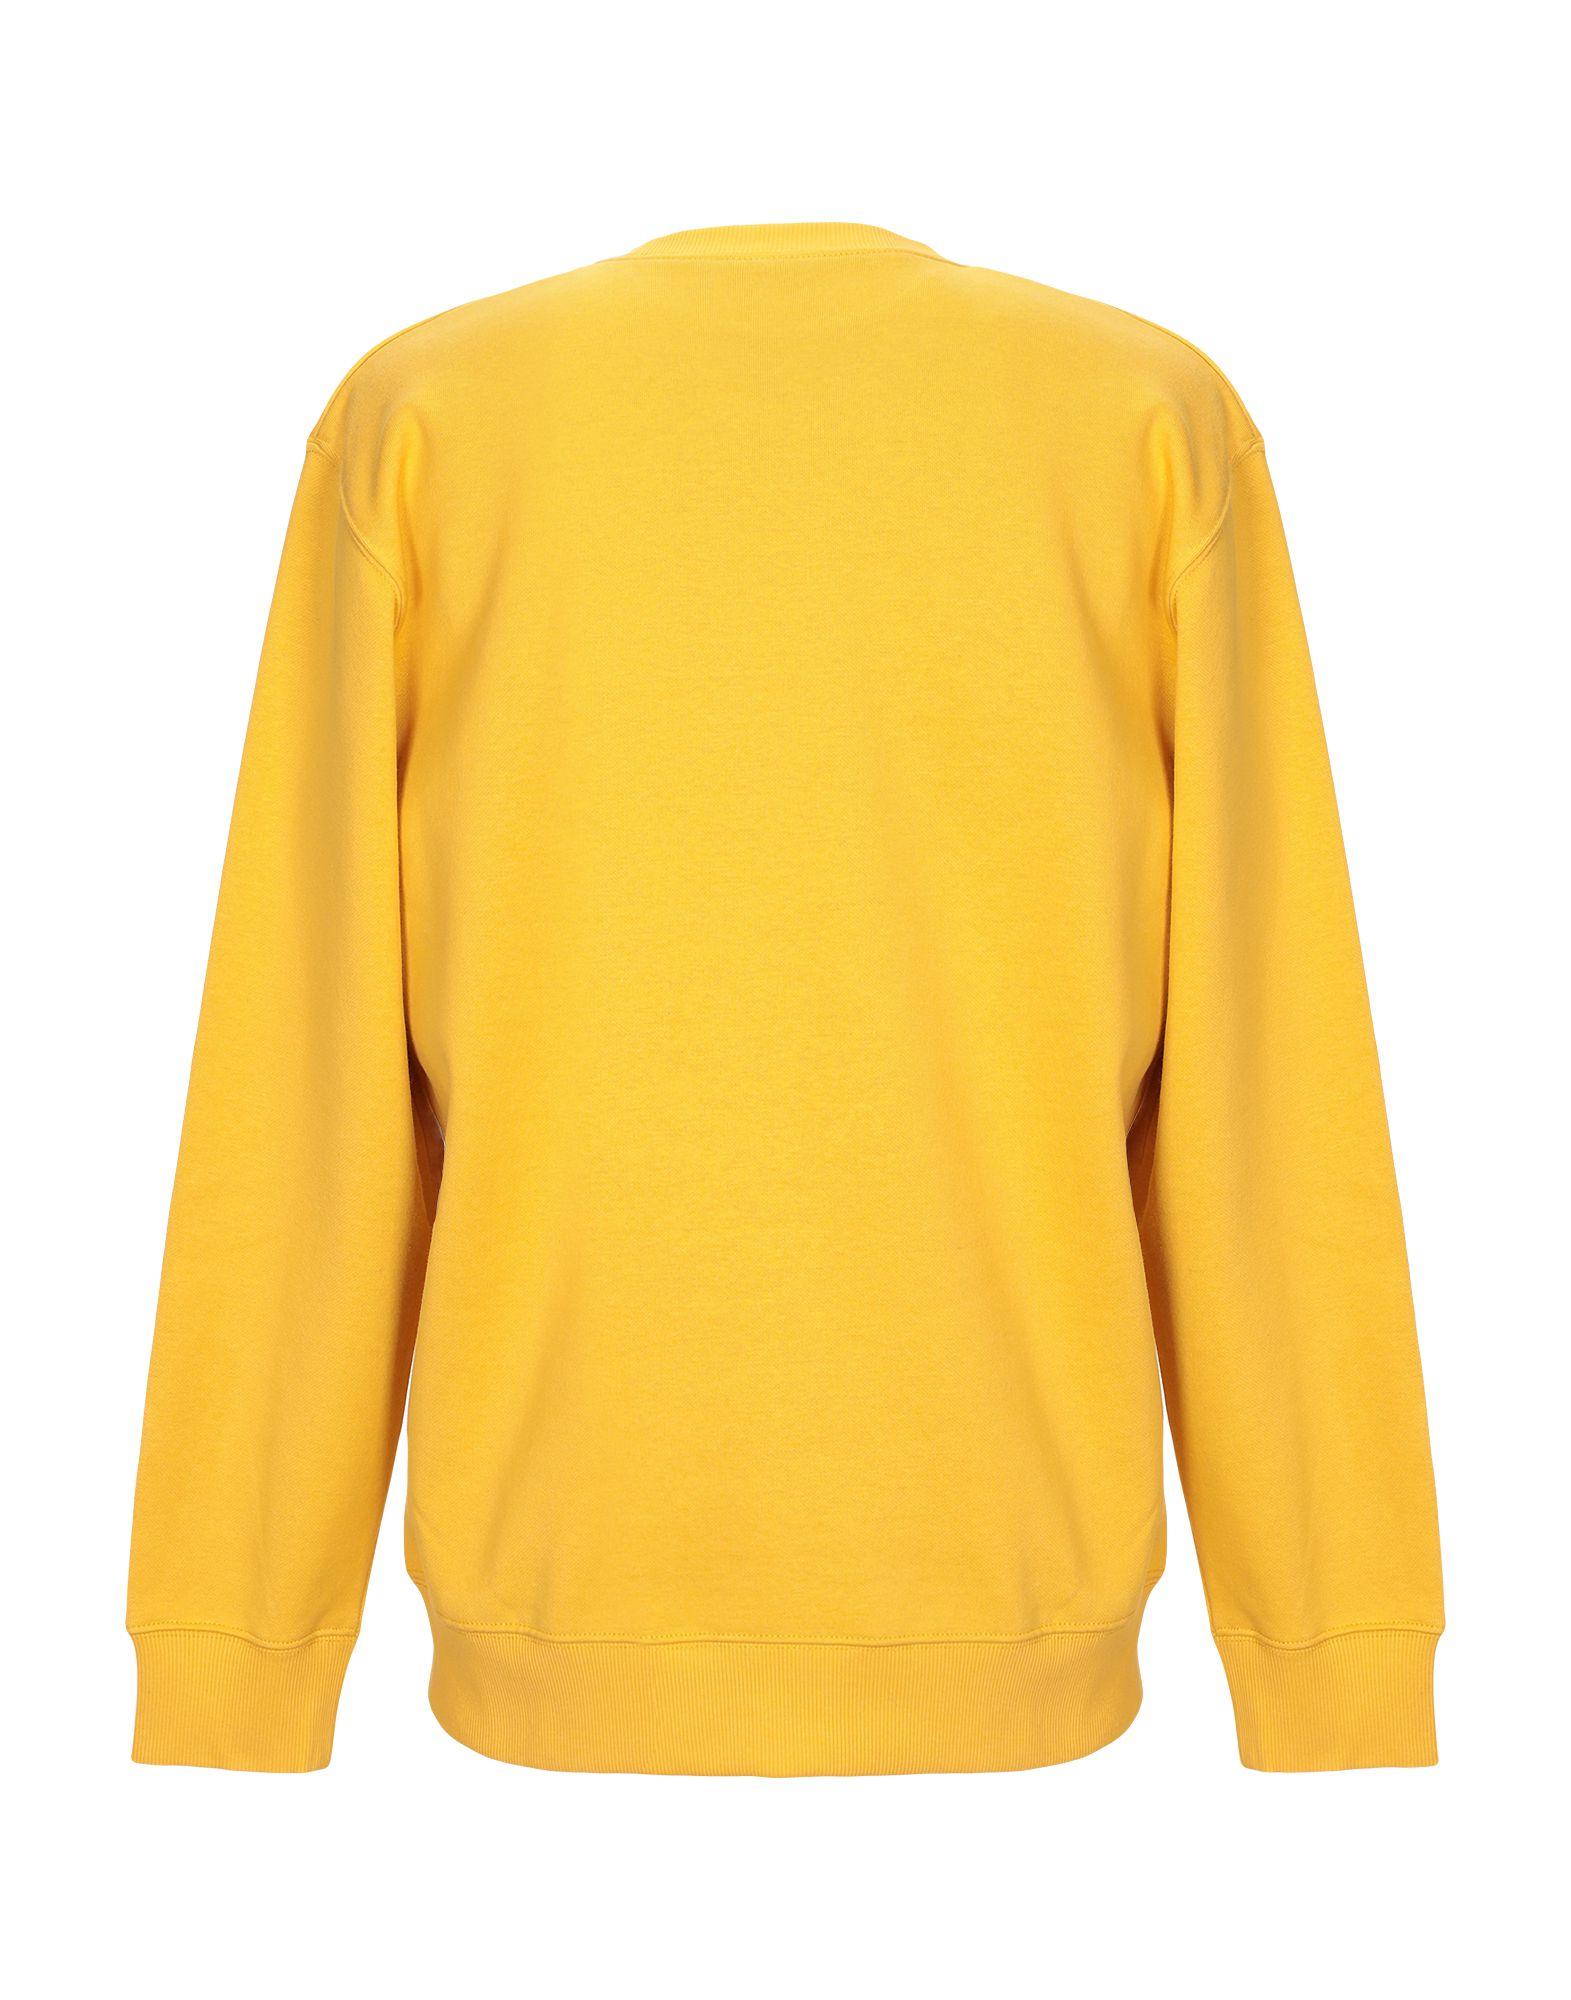 Carhartt Fleece Sweatshirt in Yellow for Men - Lyst